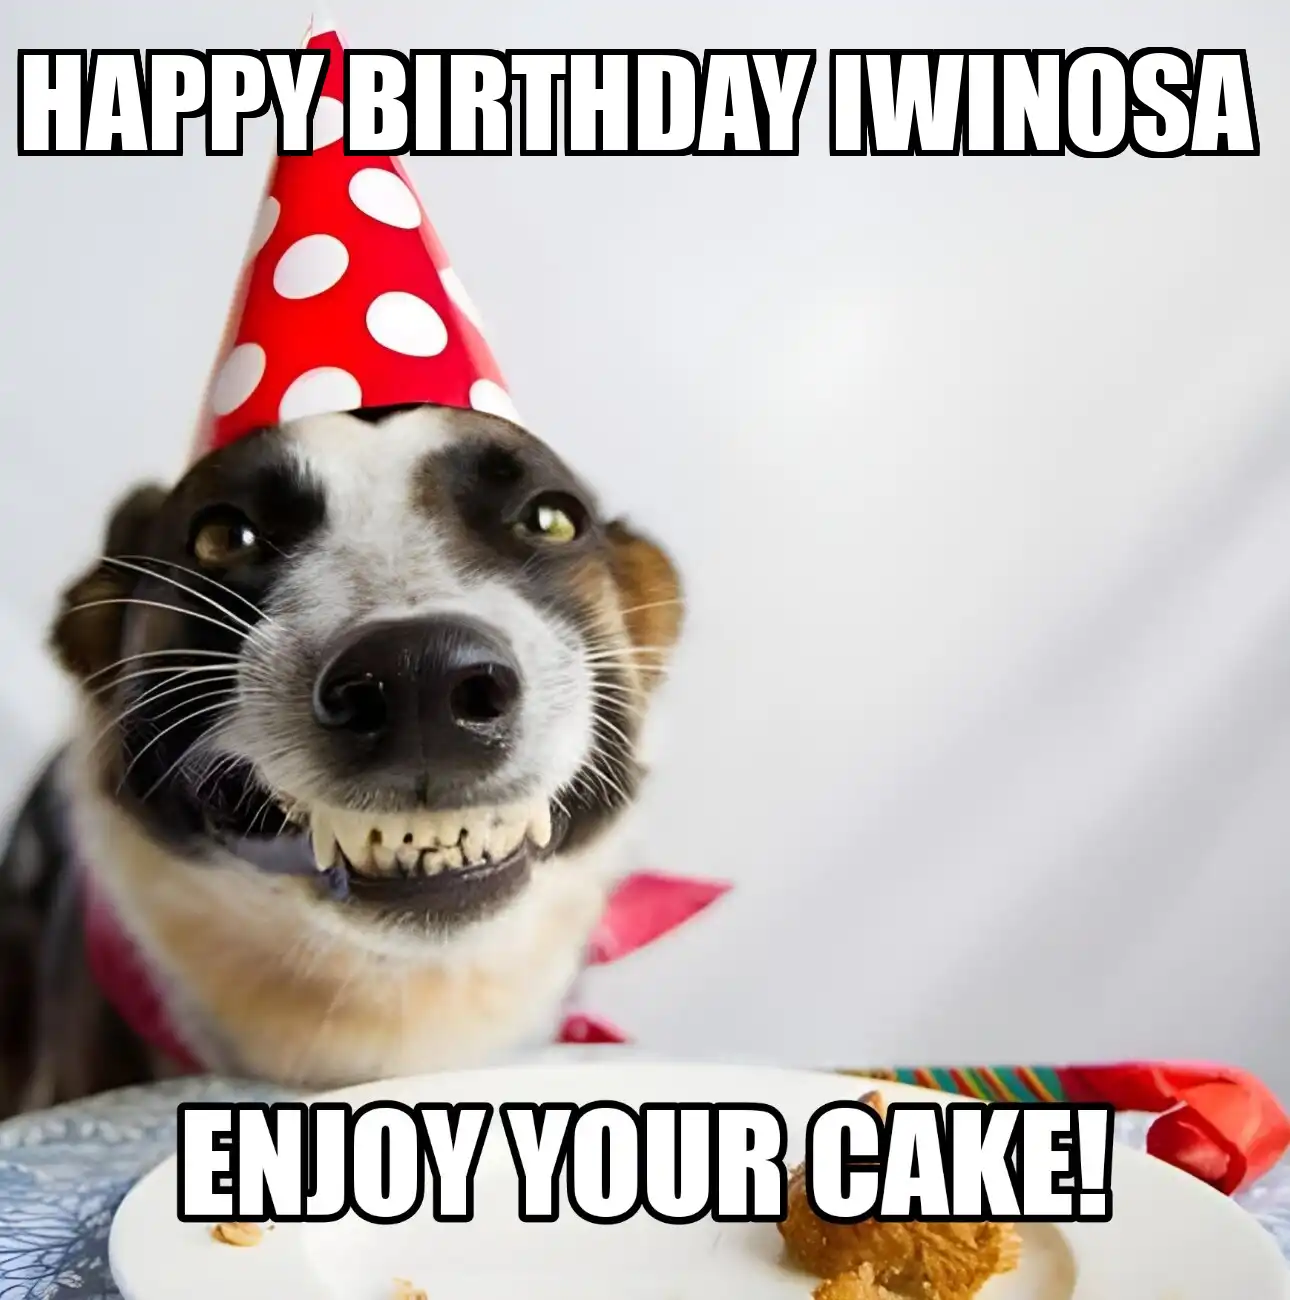 Happy Birthday Iwinosa Enjoy Your Cake Dog Meme